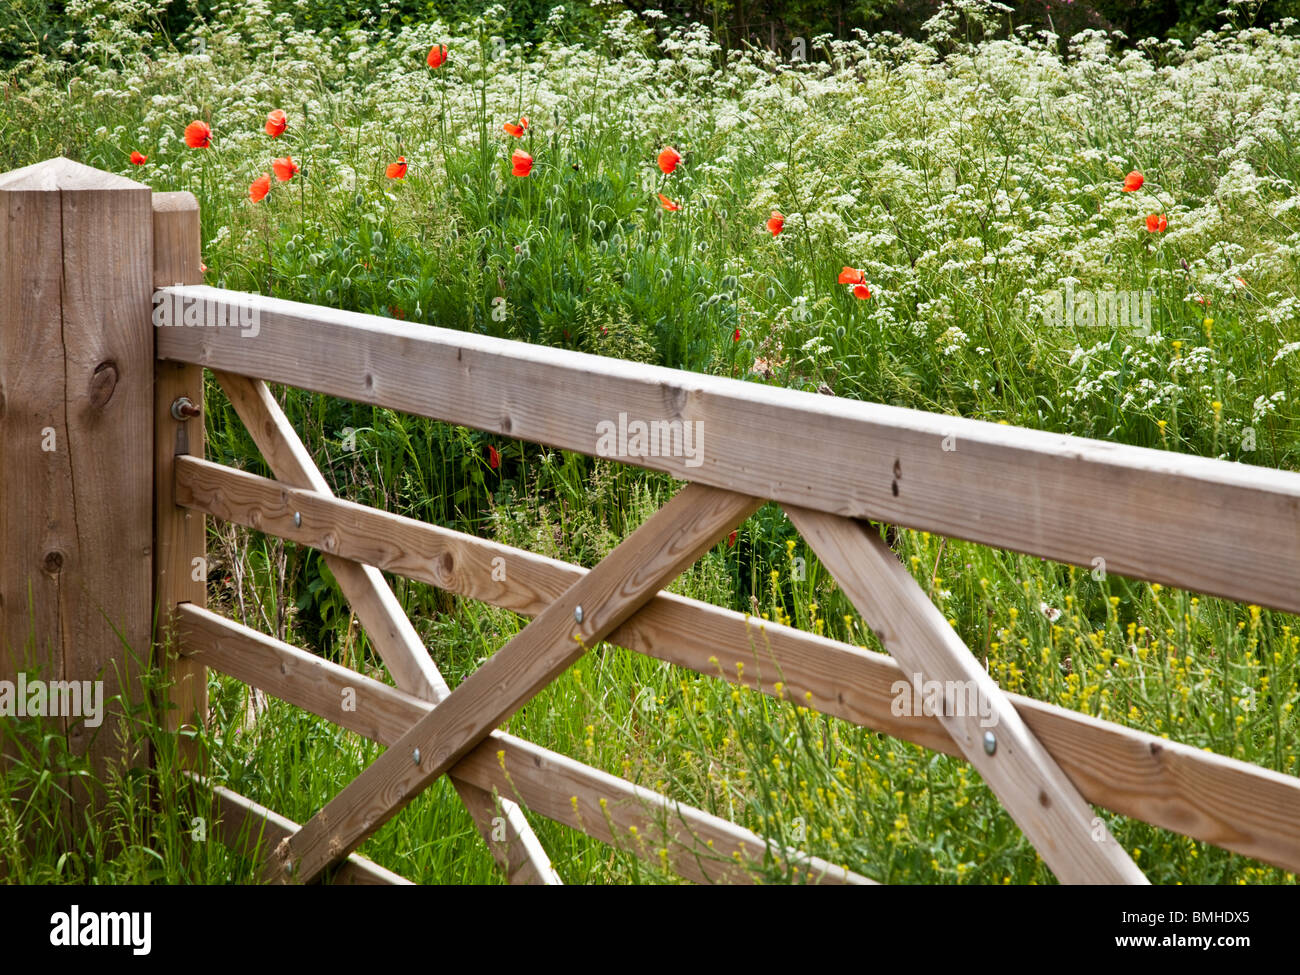 Cinco prohibieron la puerta de madera en un campo de vaca perejil silvestre y amapolas rojas en inglés típico paisaje de verano. Foto de stock